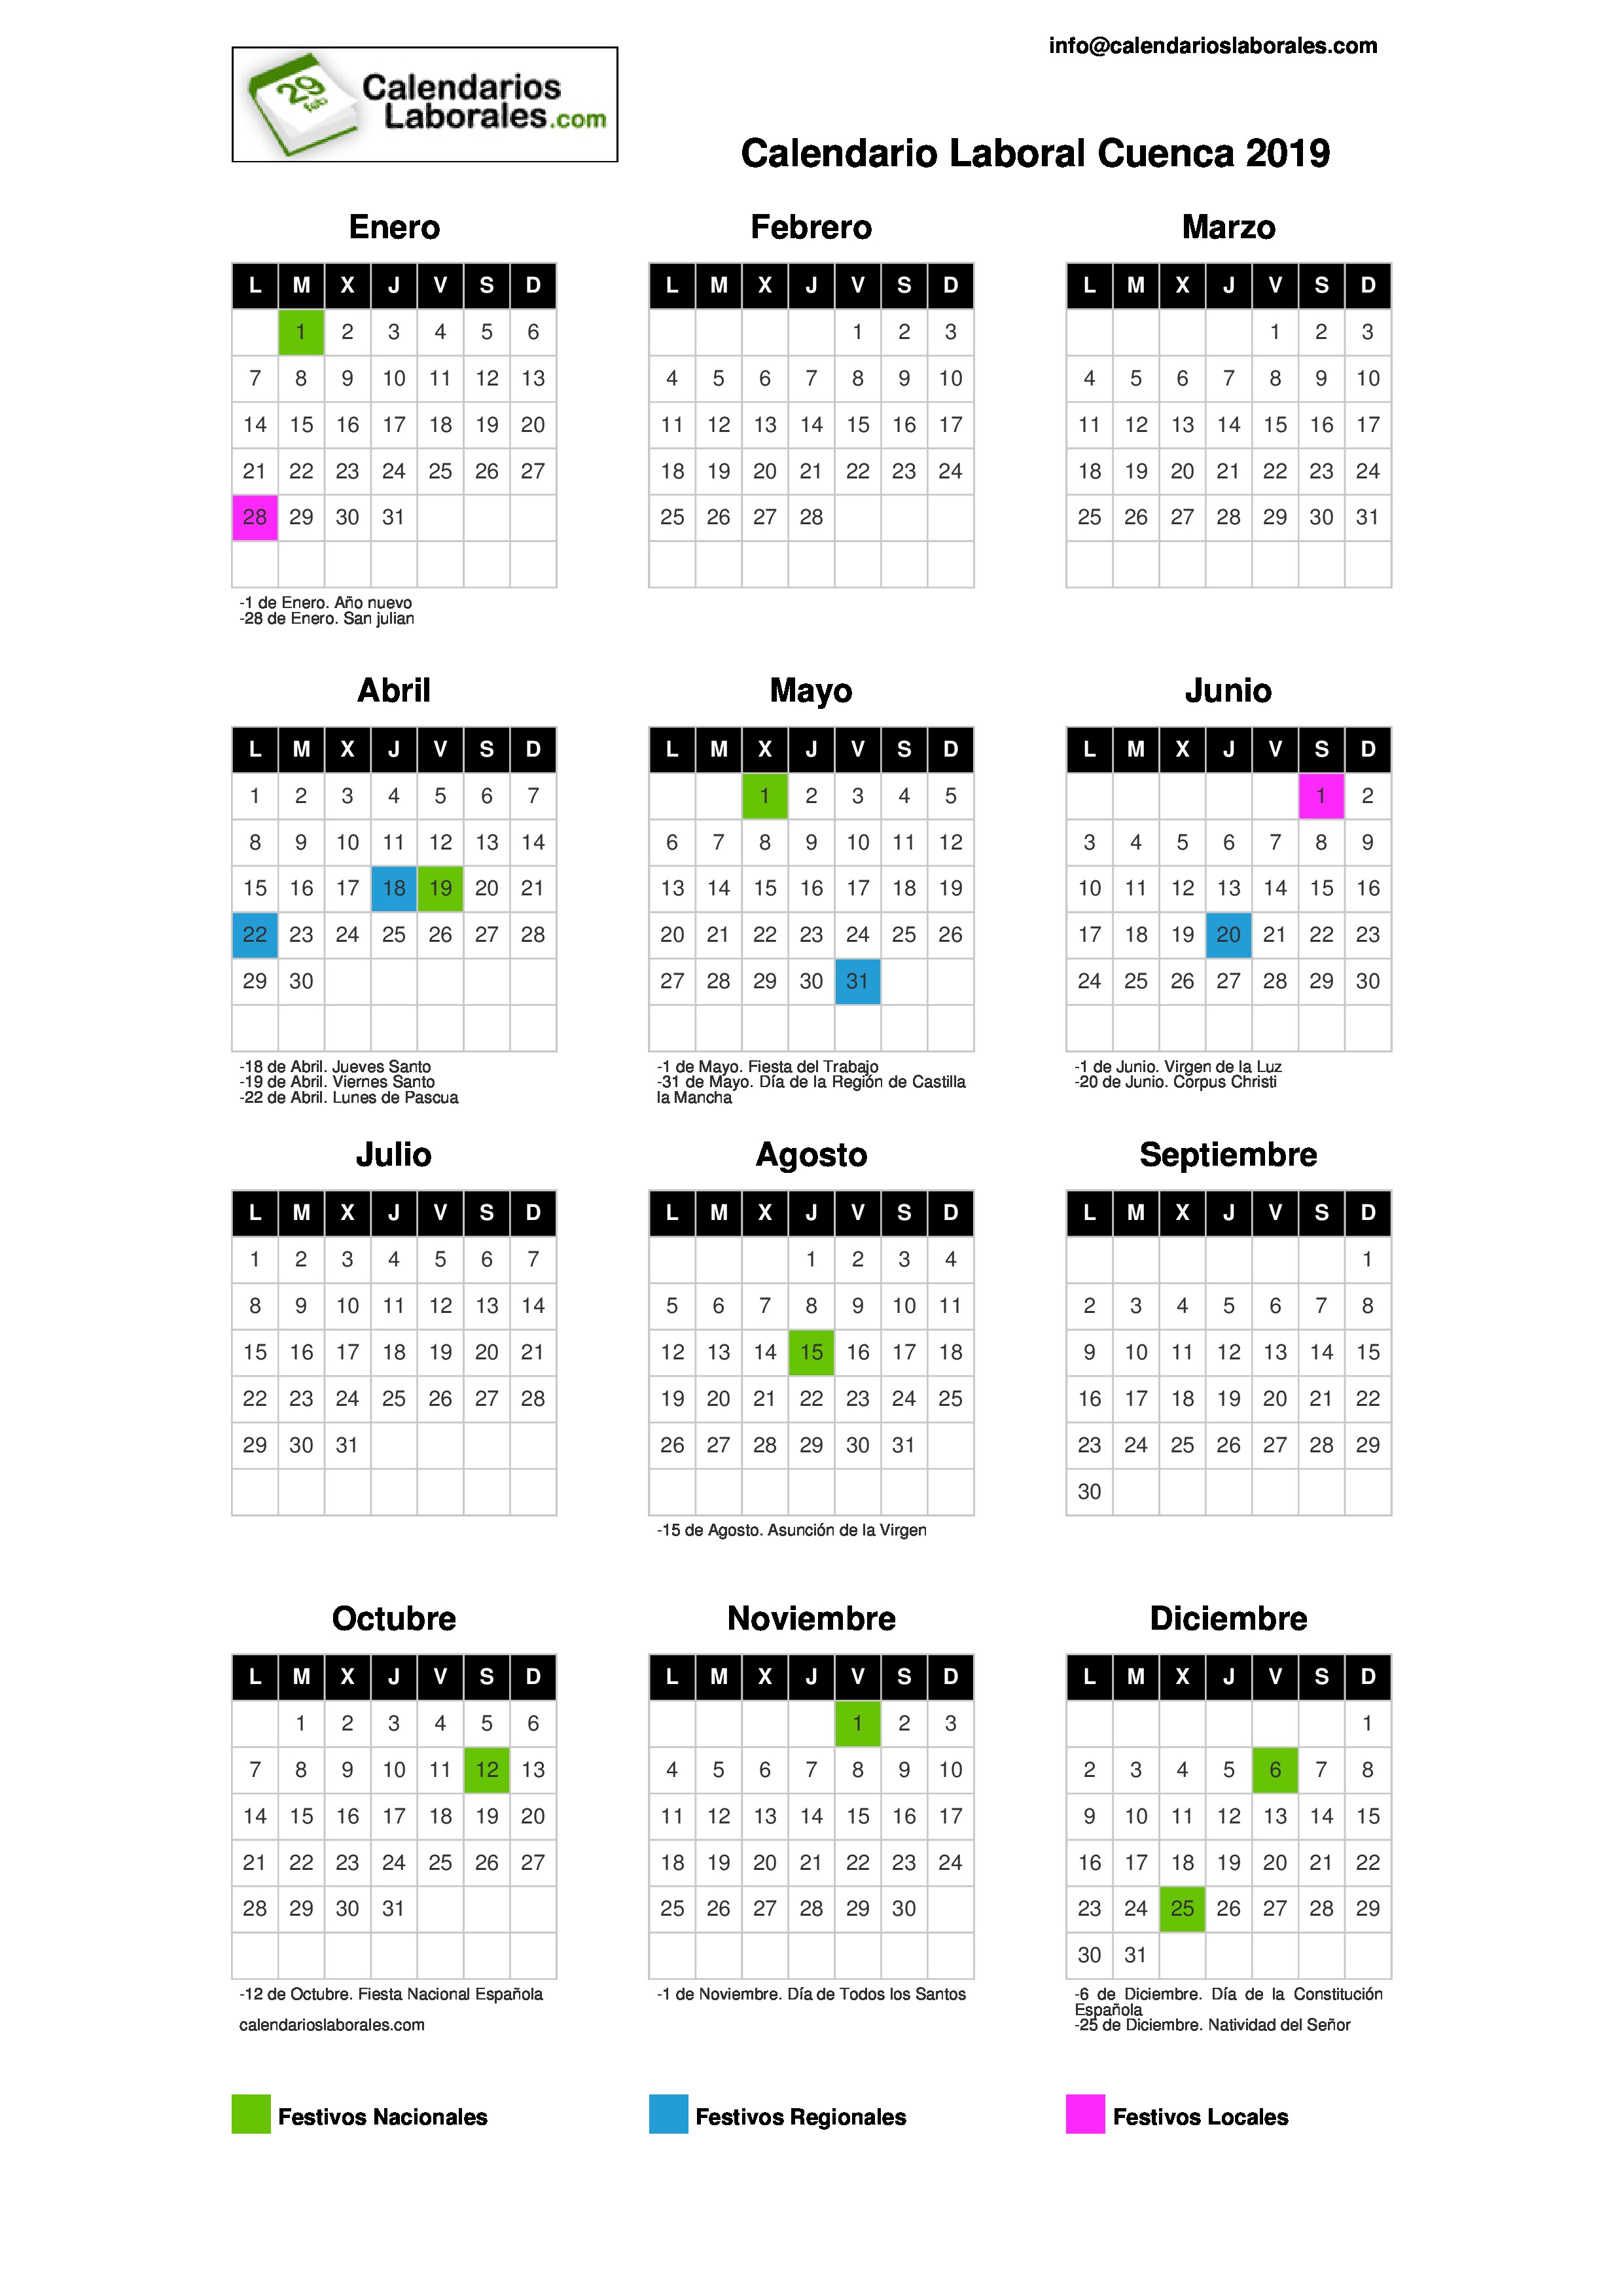 Calendario Laboral Cuenca 20192480 x 3508